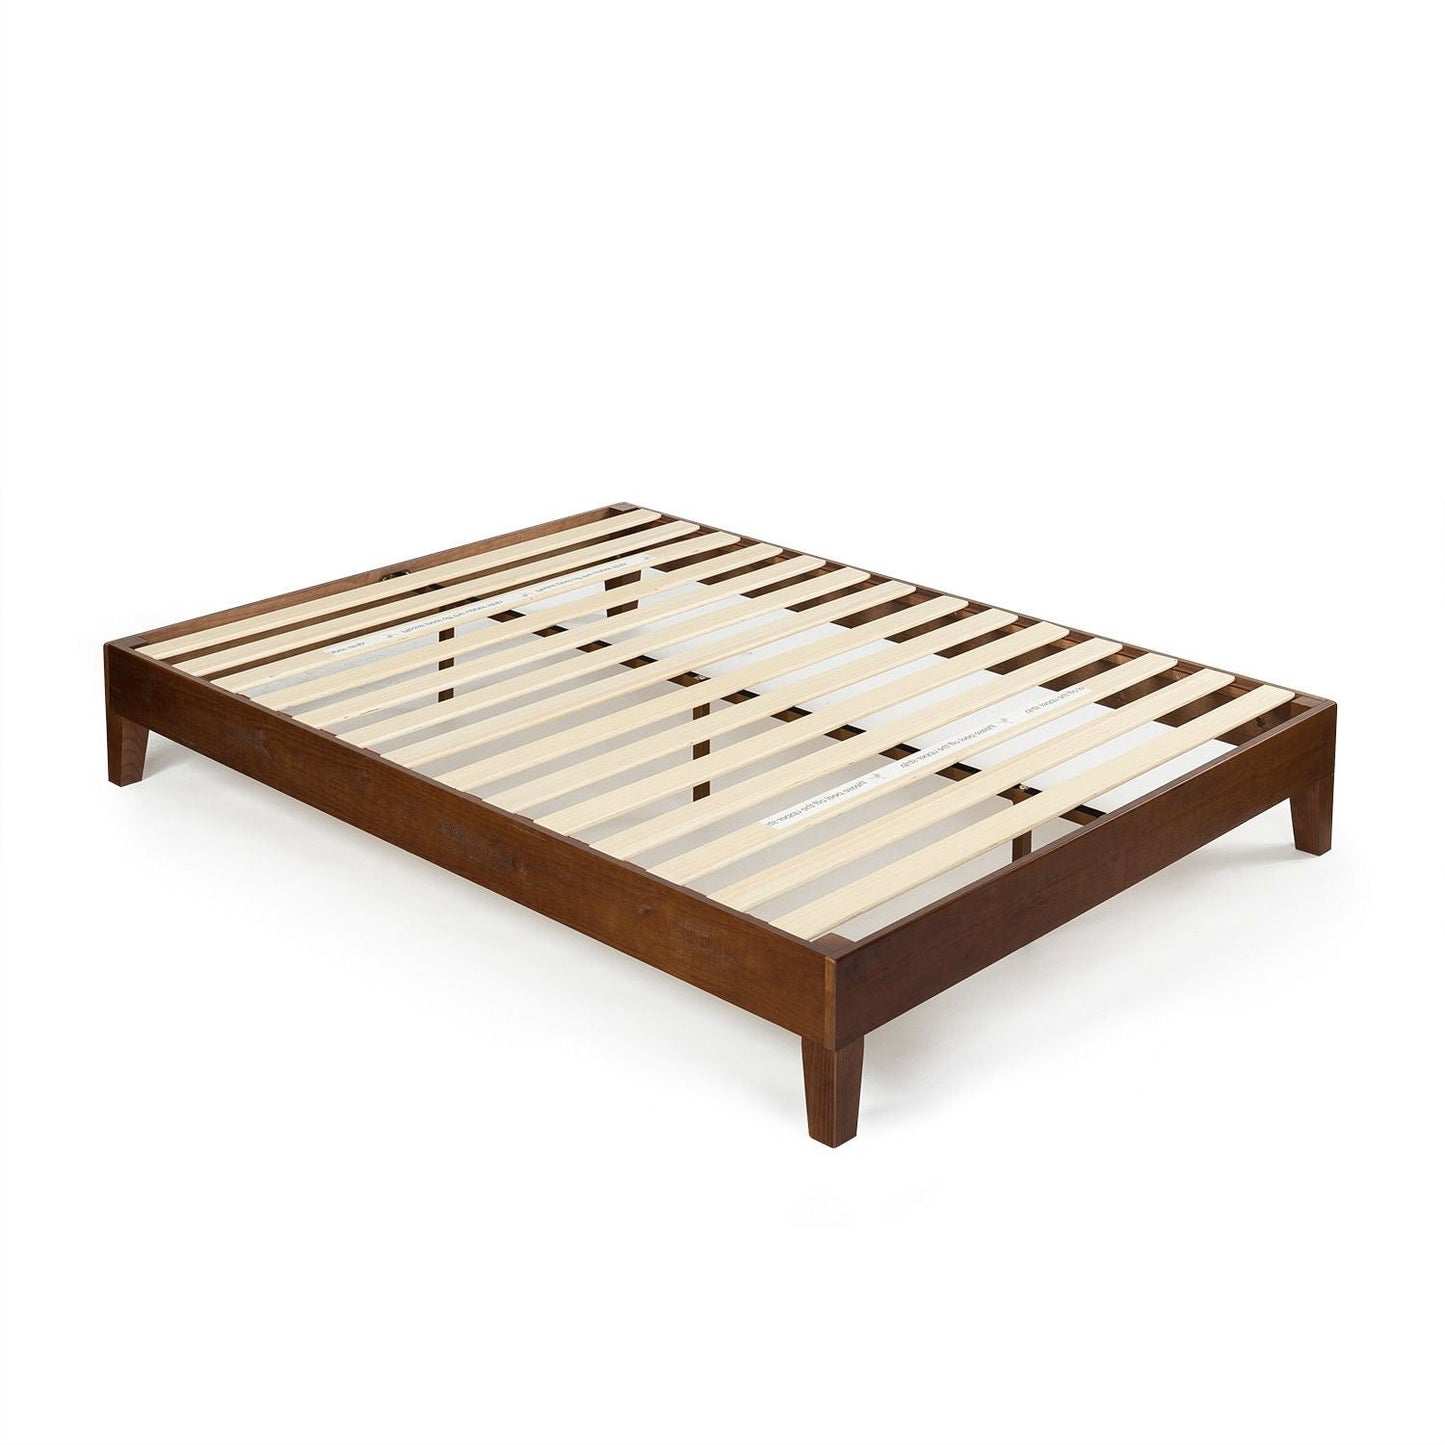 Bedroom > Bed Frames > Platform Beds - Full Size Low Profile Solid Wood Platform Bed Frame In Espresso Finish